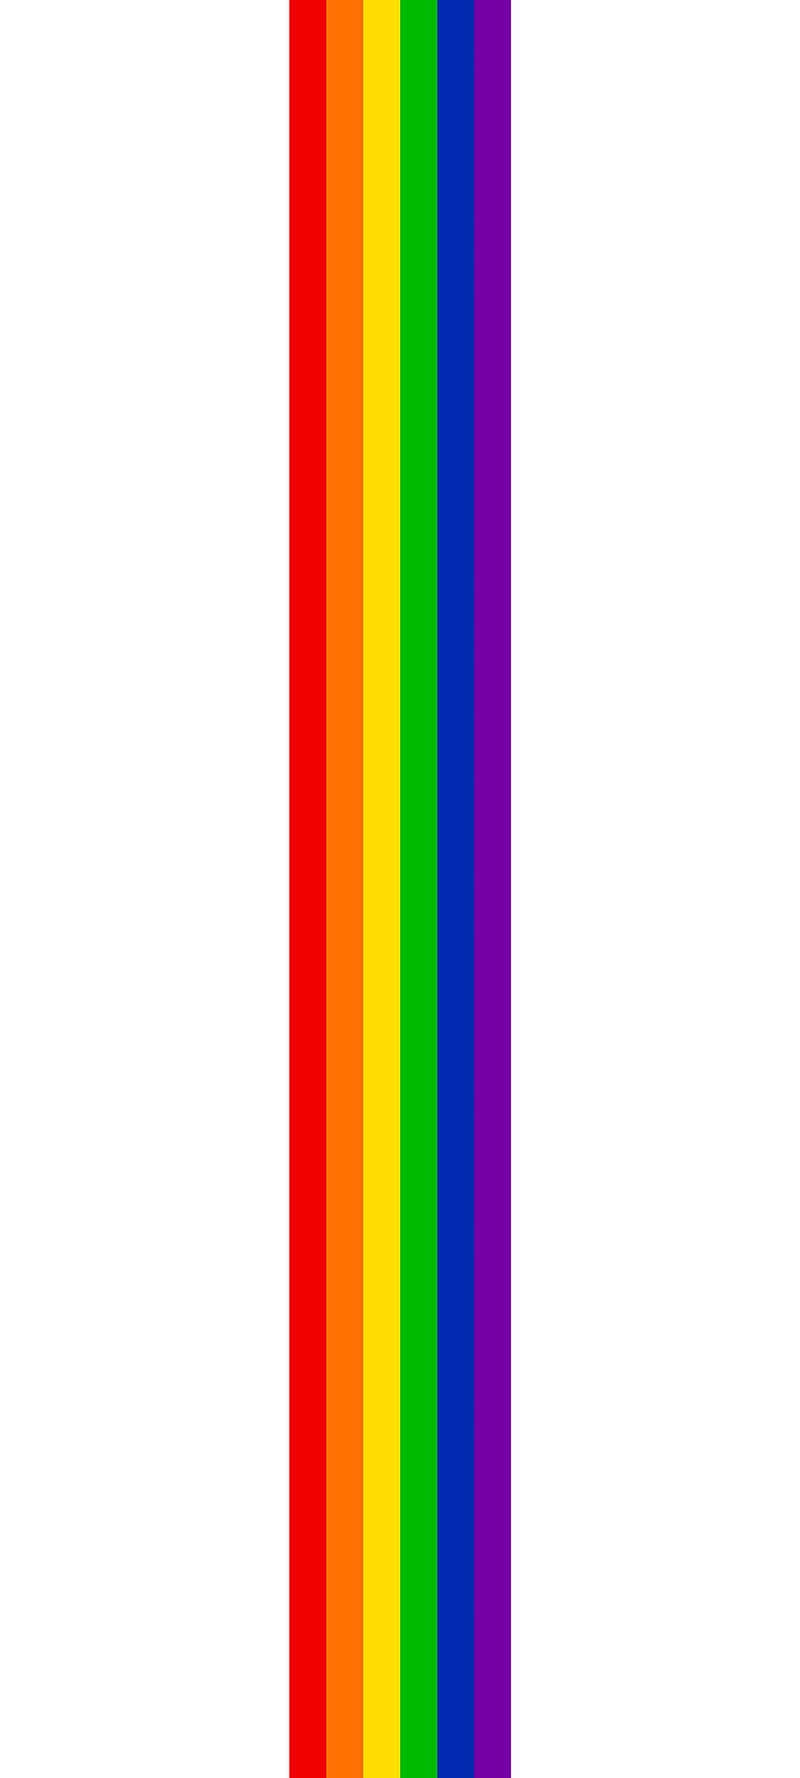 Treforvævede Regnbue-striber, Som Repræsenterer Pride-flaget.